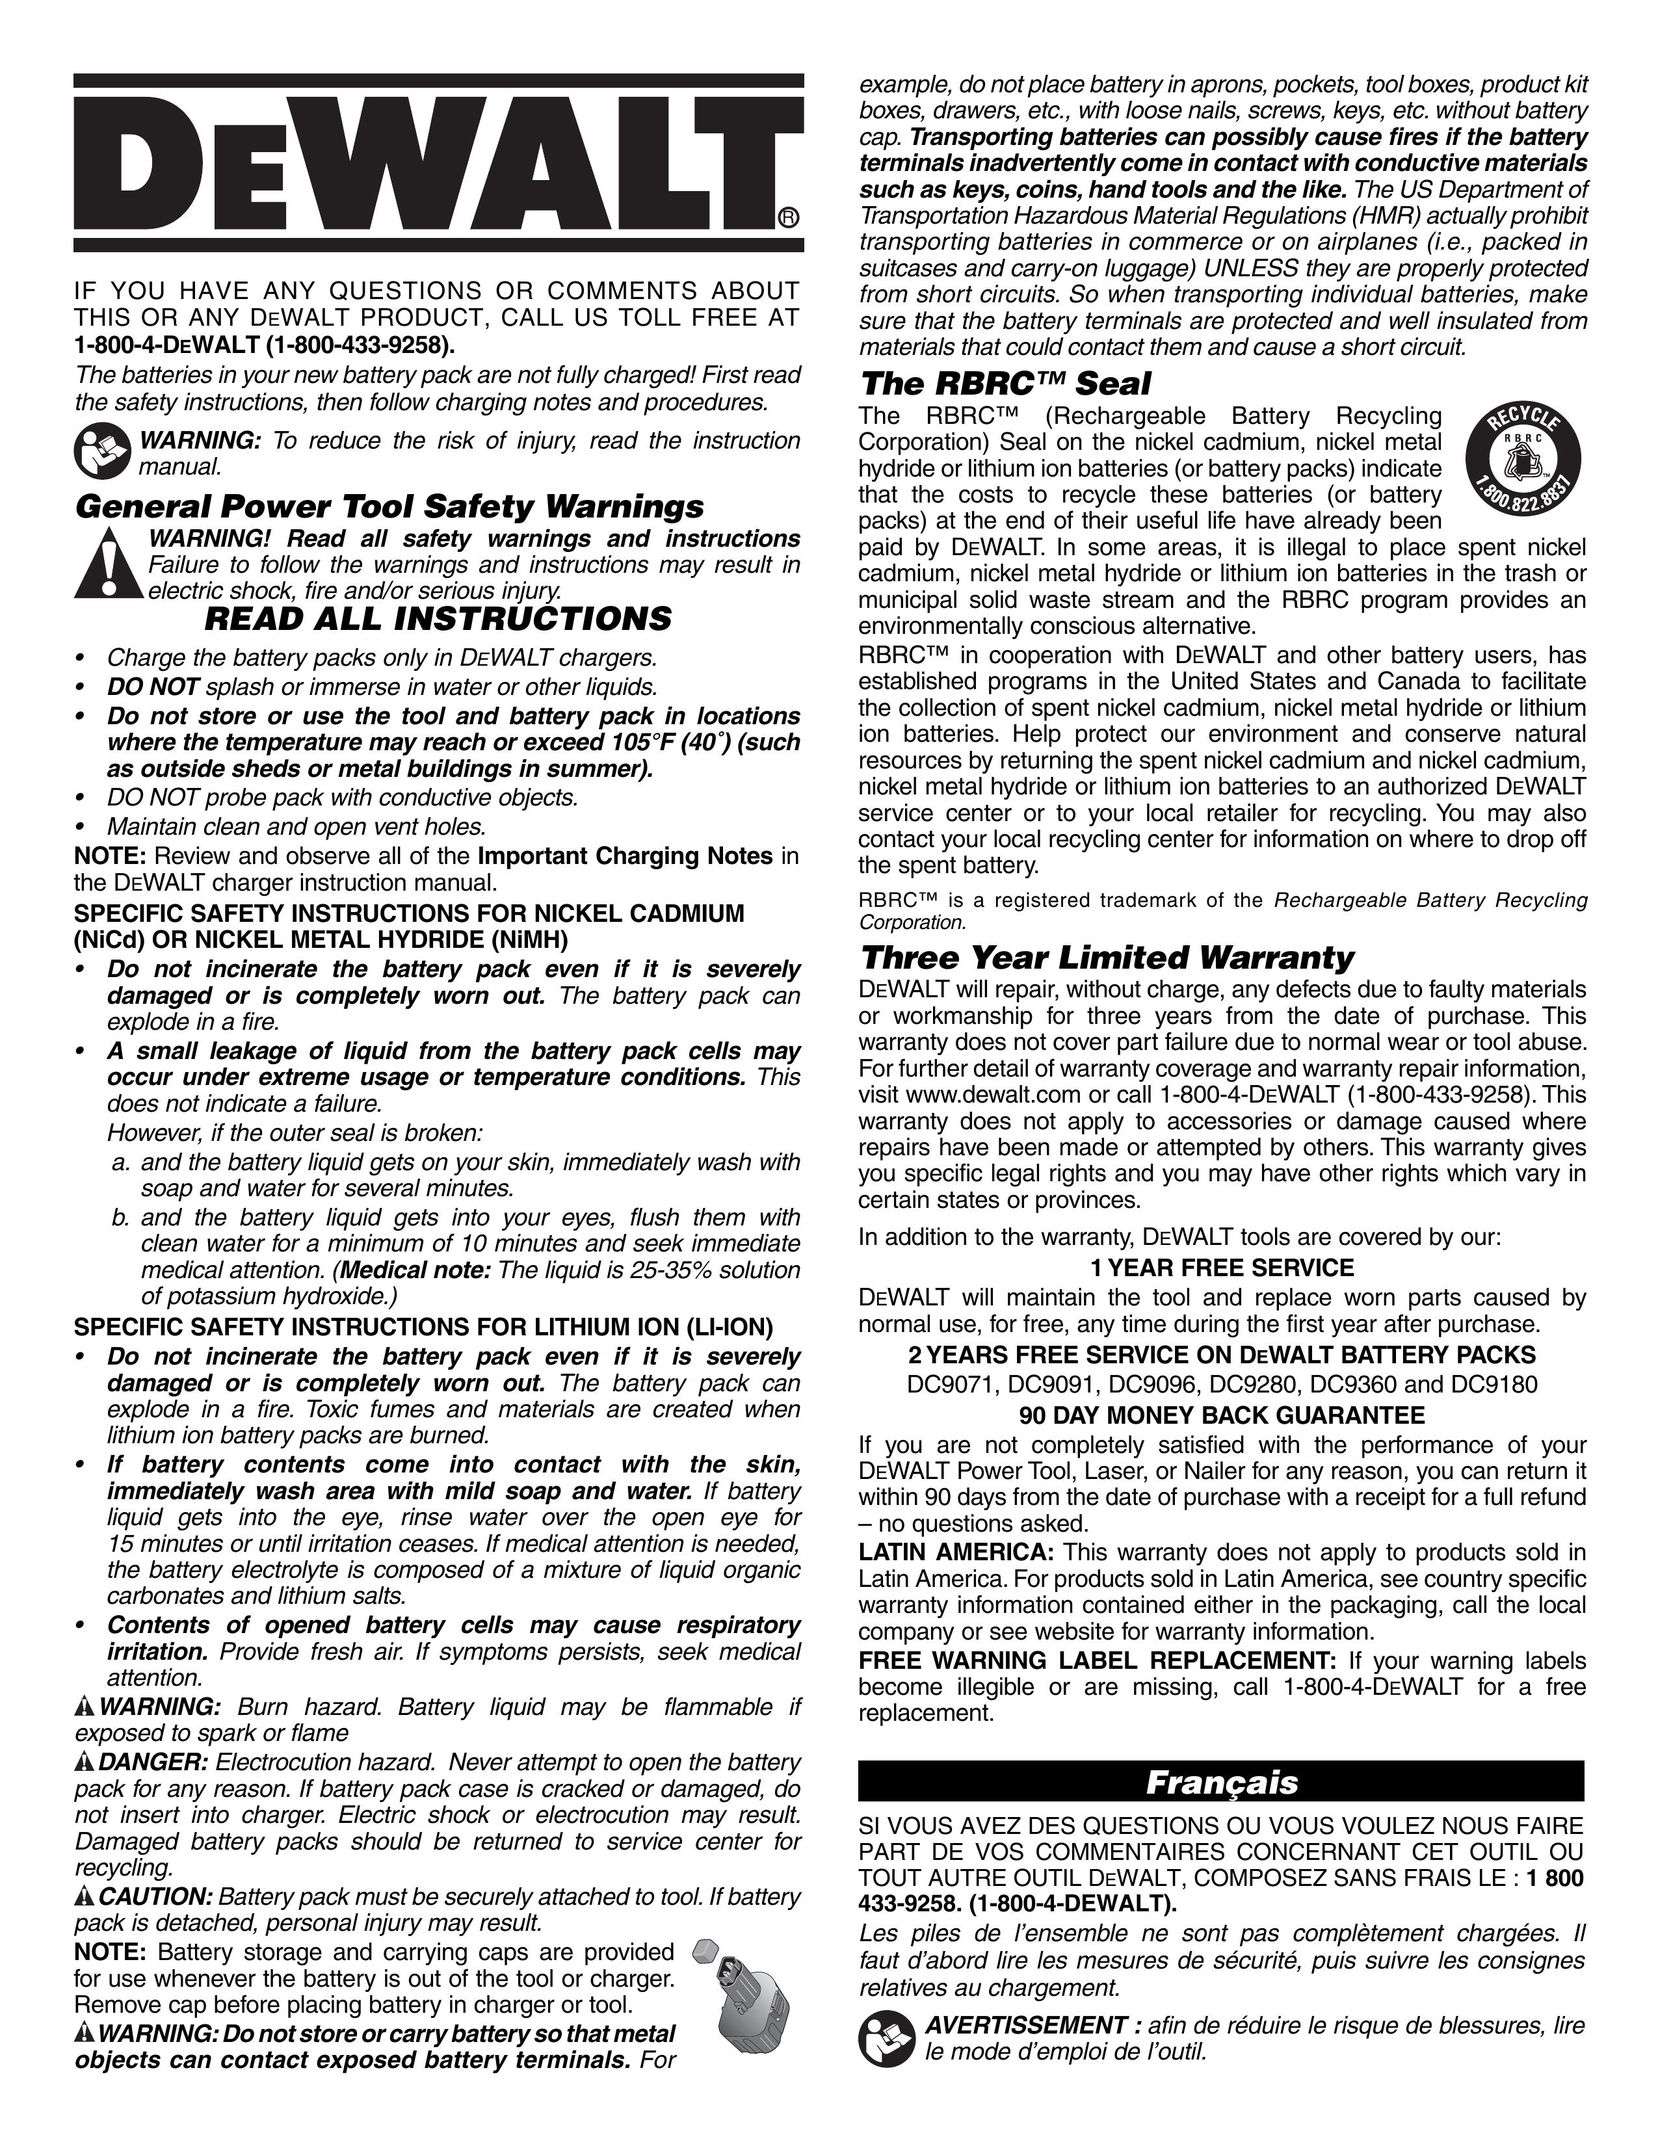 DeWalt DC9099 Battery Charger User Manual